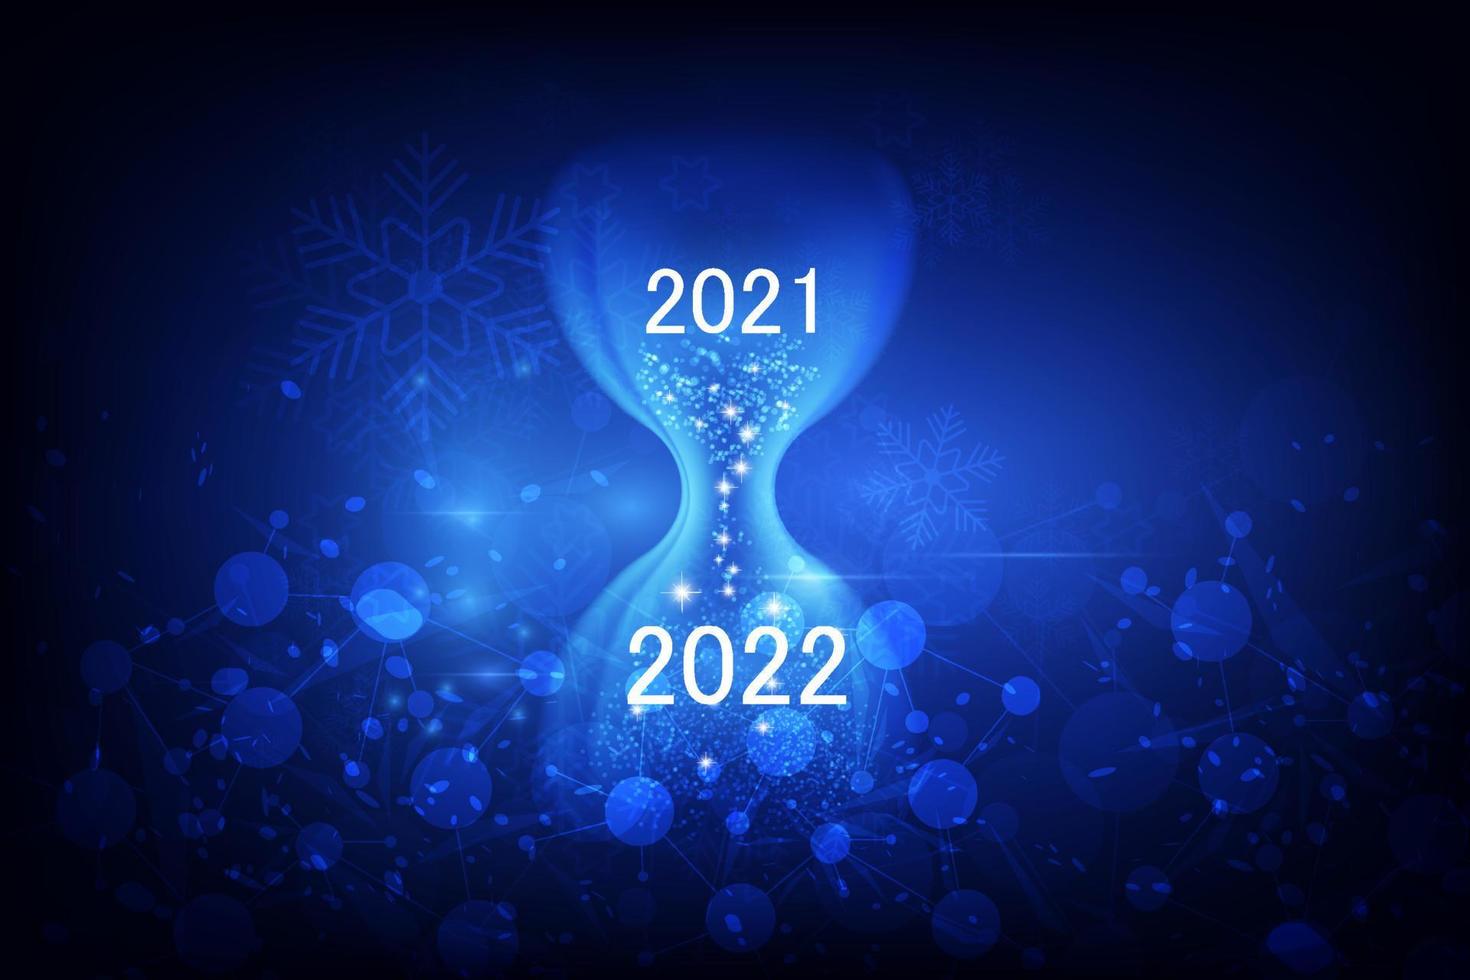 nuovo anno 2022 con il concetto di clessidra. illustrazione vettoriale